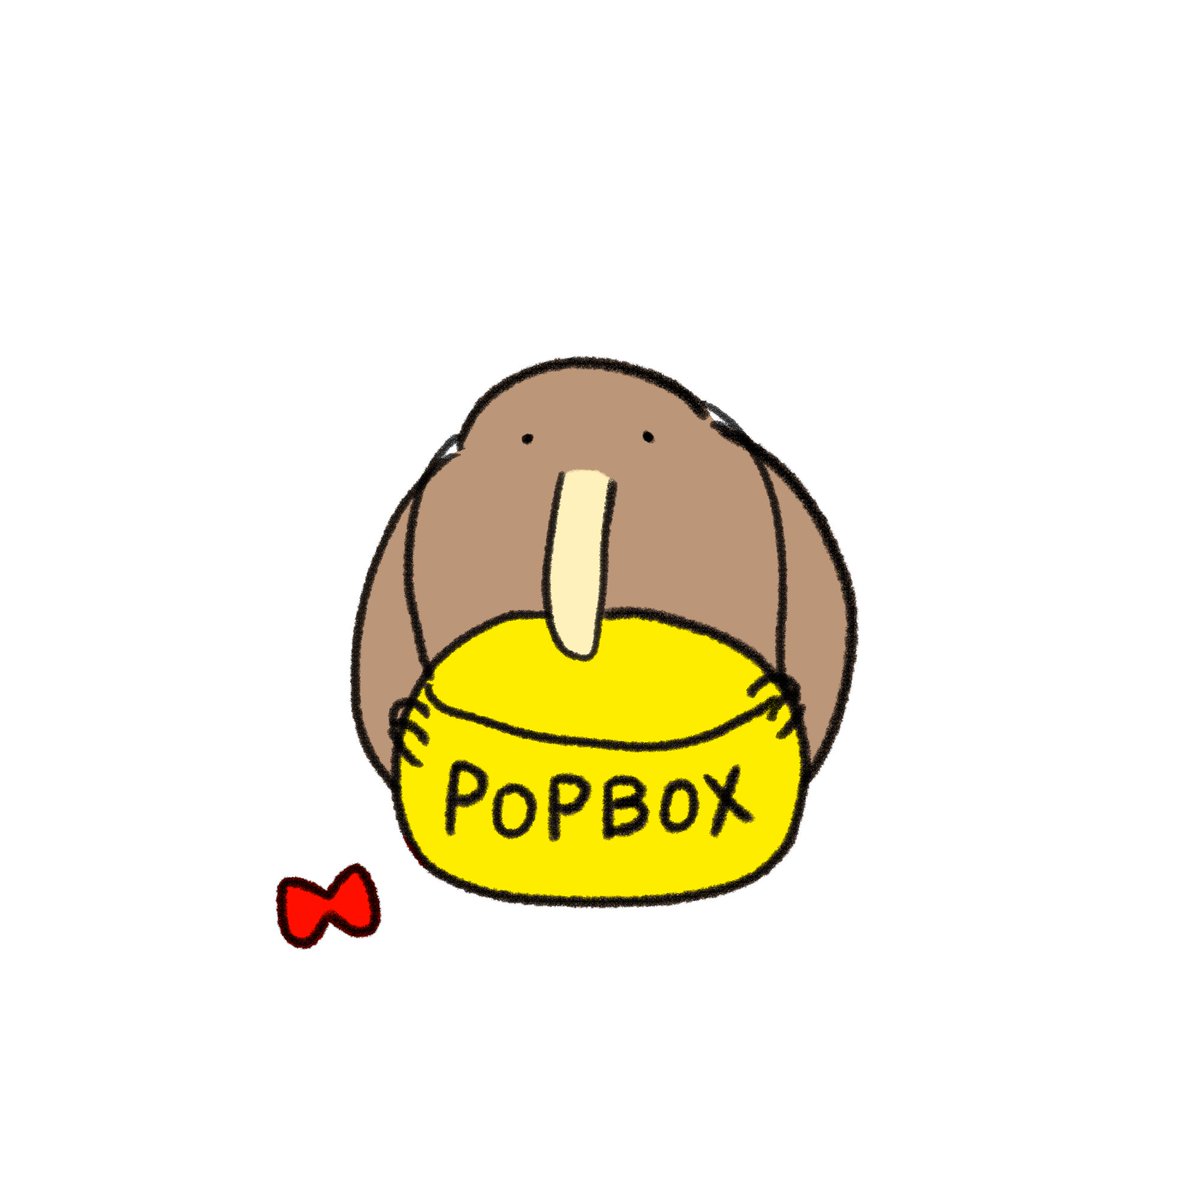 「4月29日(木)~開催予定だったPOPBOX GINZAは、緊急事態宣言を受けて」|きう山🥝新スタンプ発売🕺のイラスト